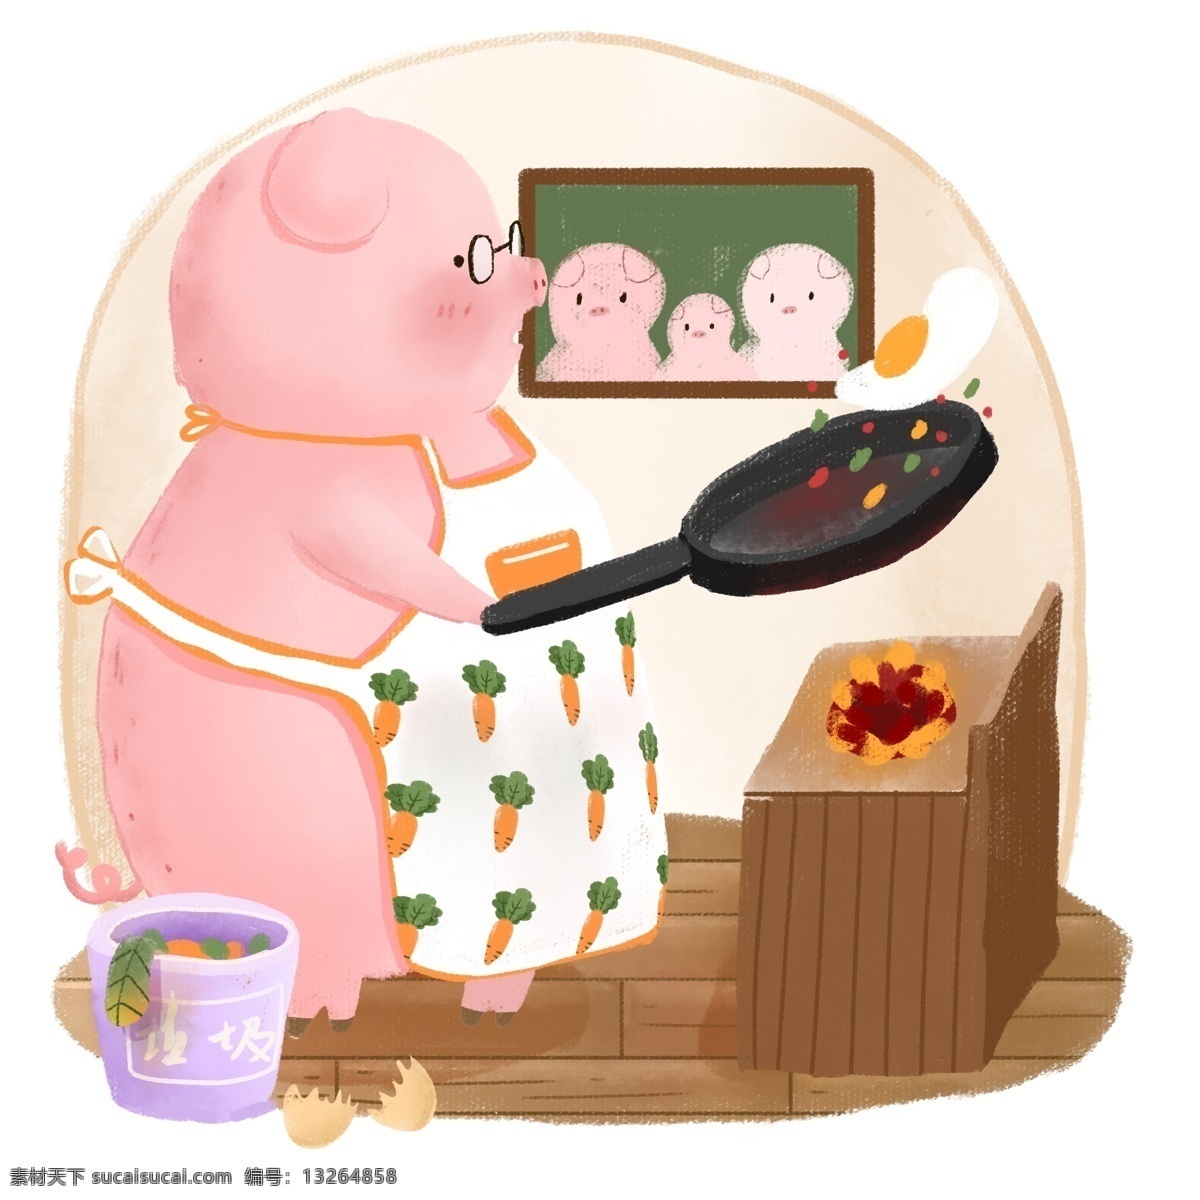 生肖 动物 猪 炒 蛋 做饭 卡通 可爱 儿童 手绘 插画 元素 卡通可爱